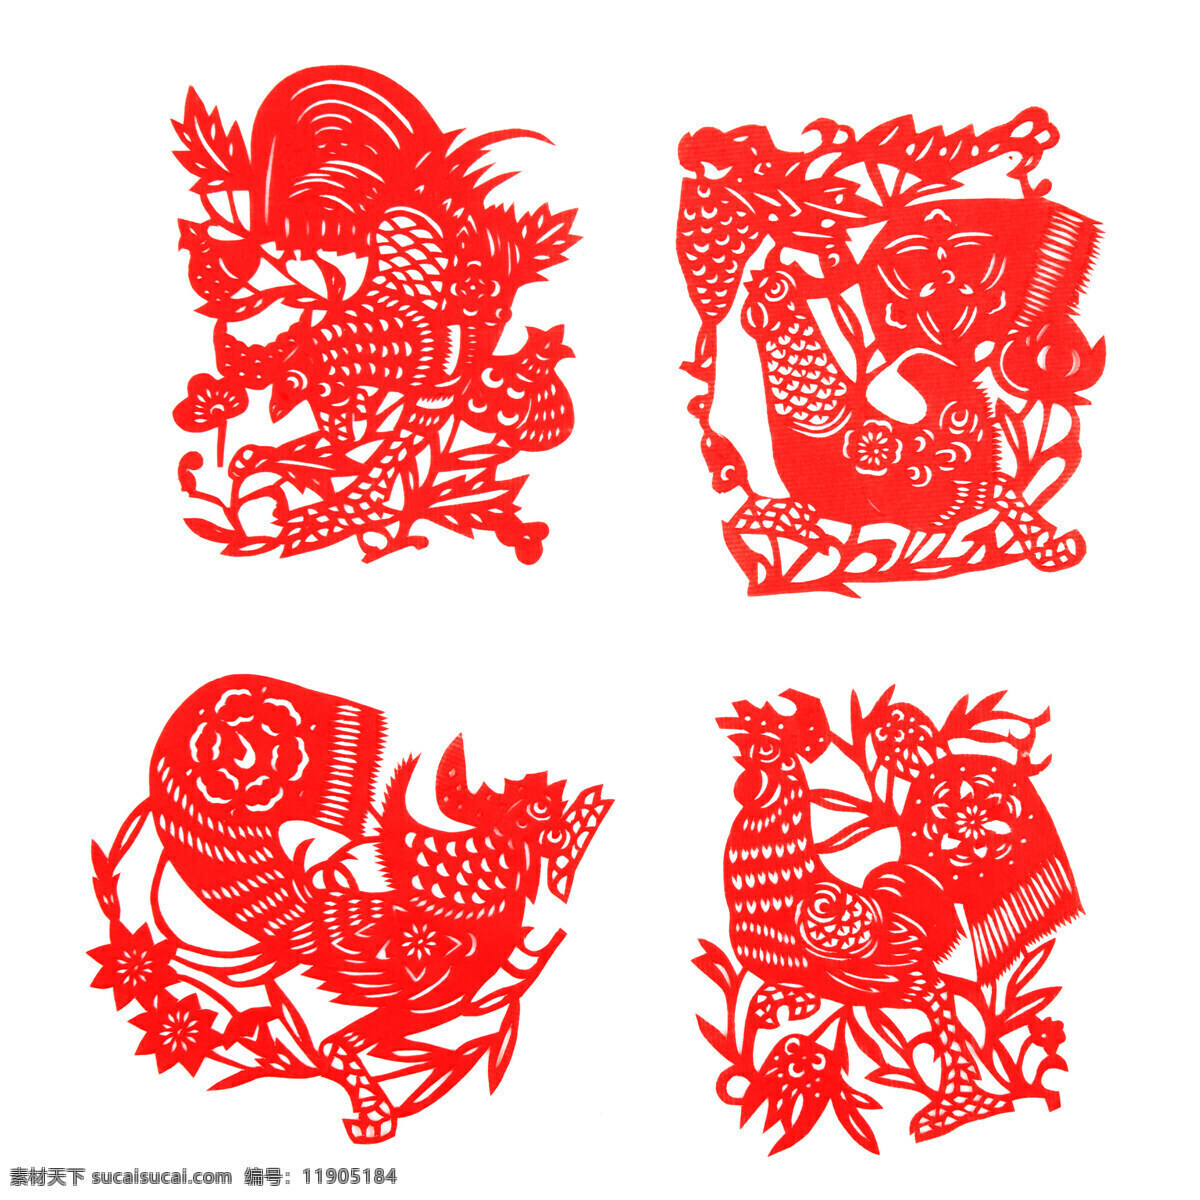 剪纸鸡 剪纸 鸡年 生肖 公鸡 红色 传统文化 文化艺术